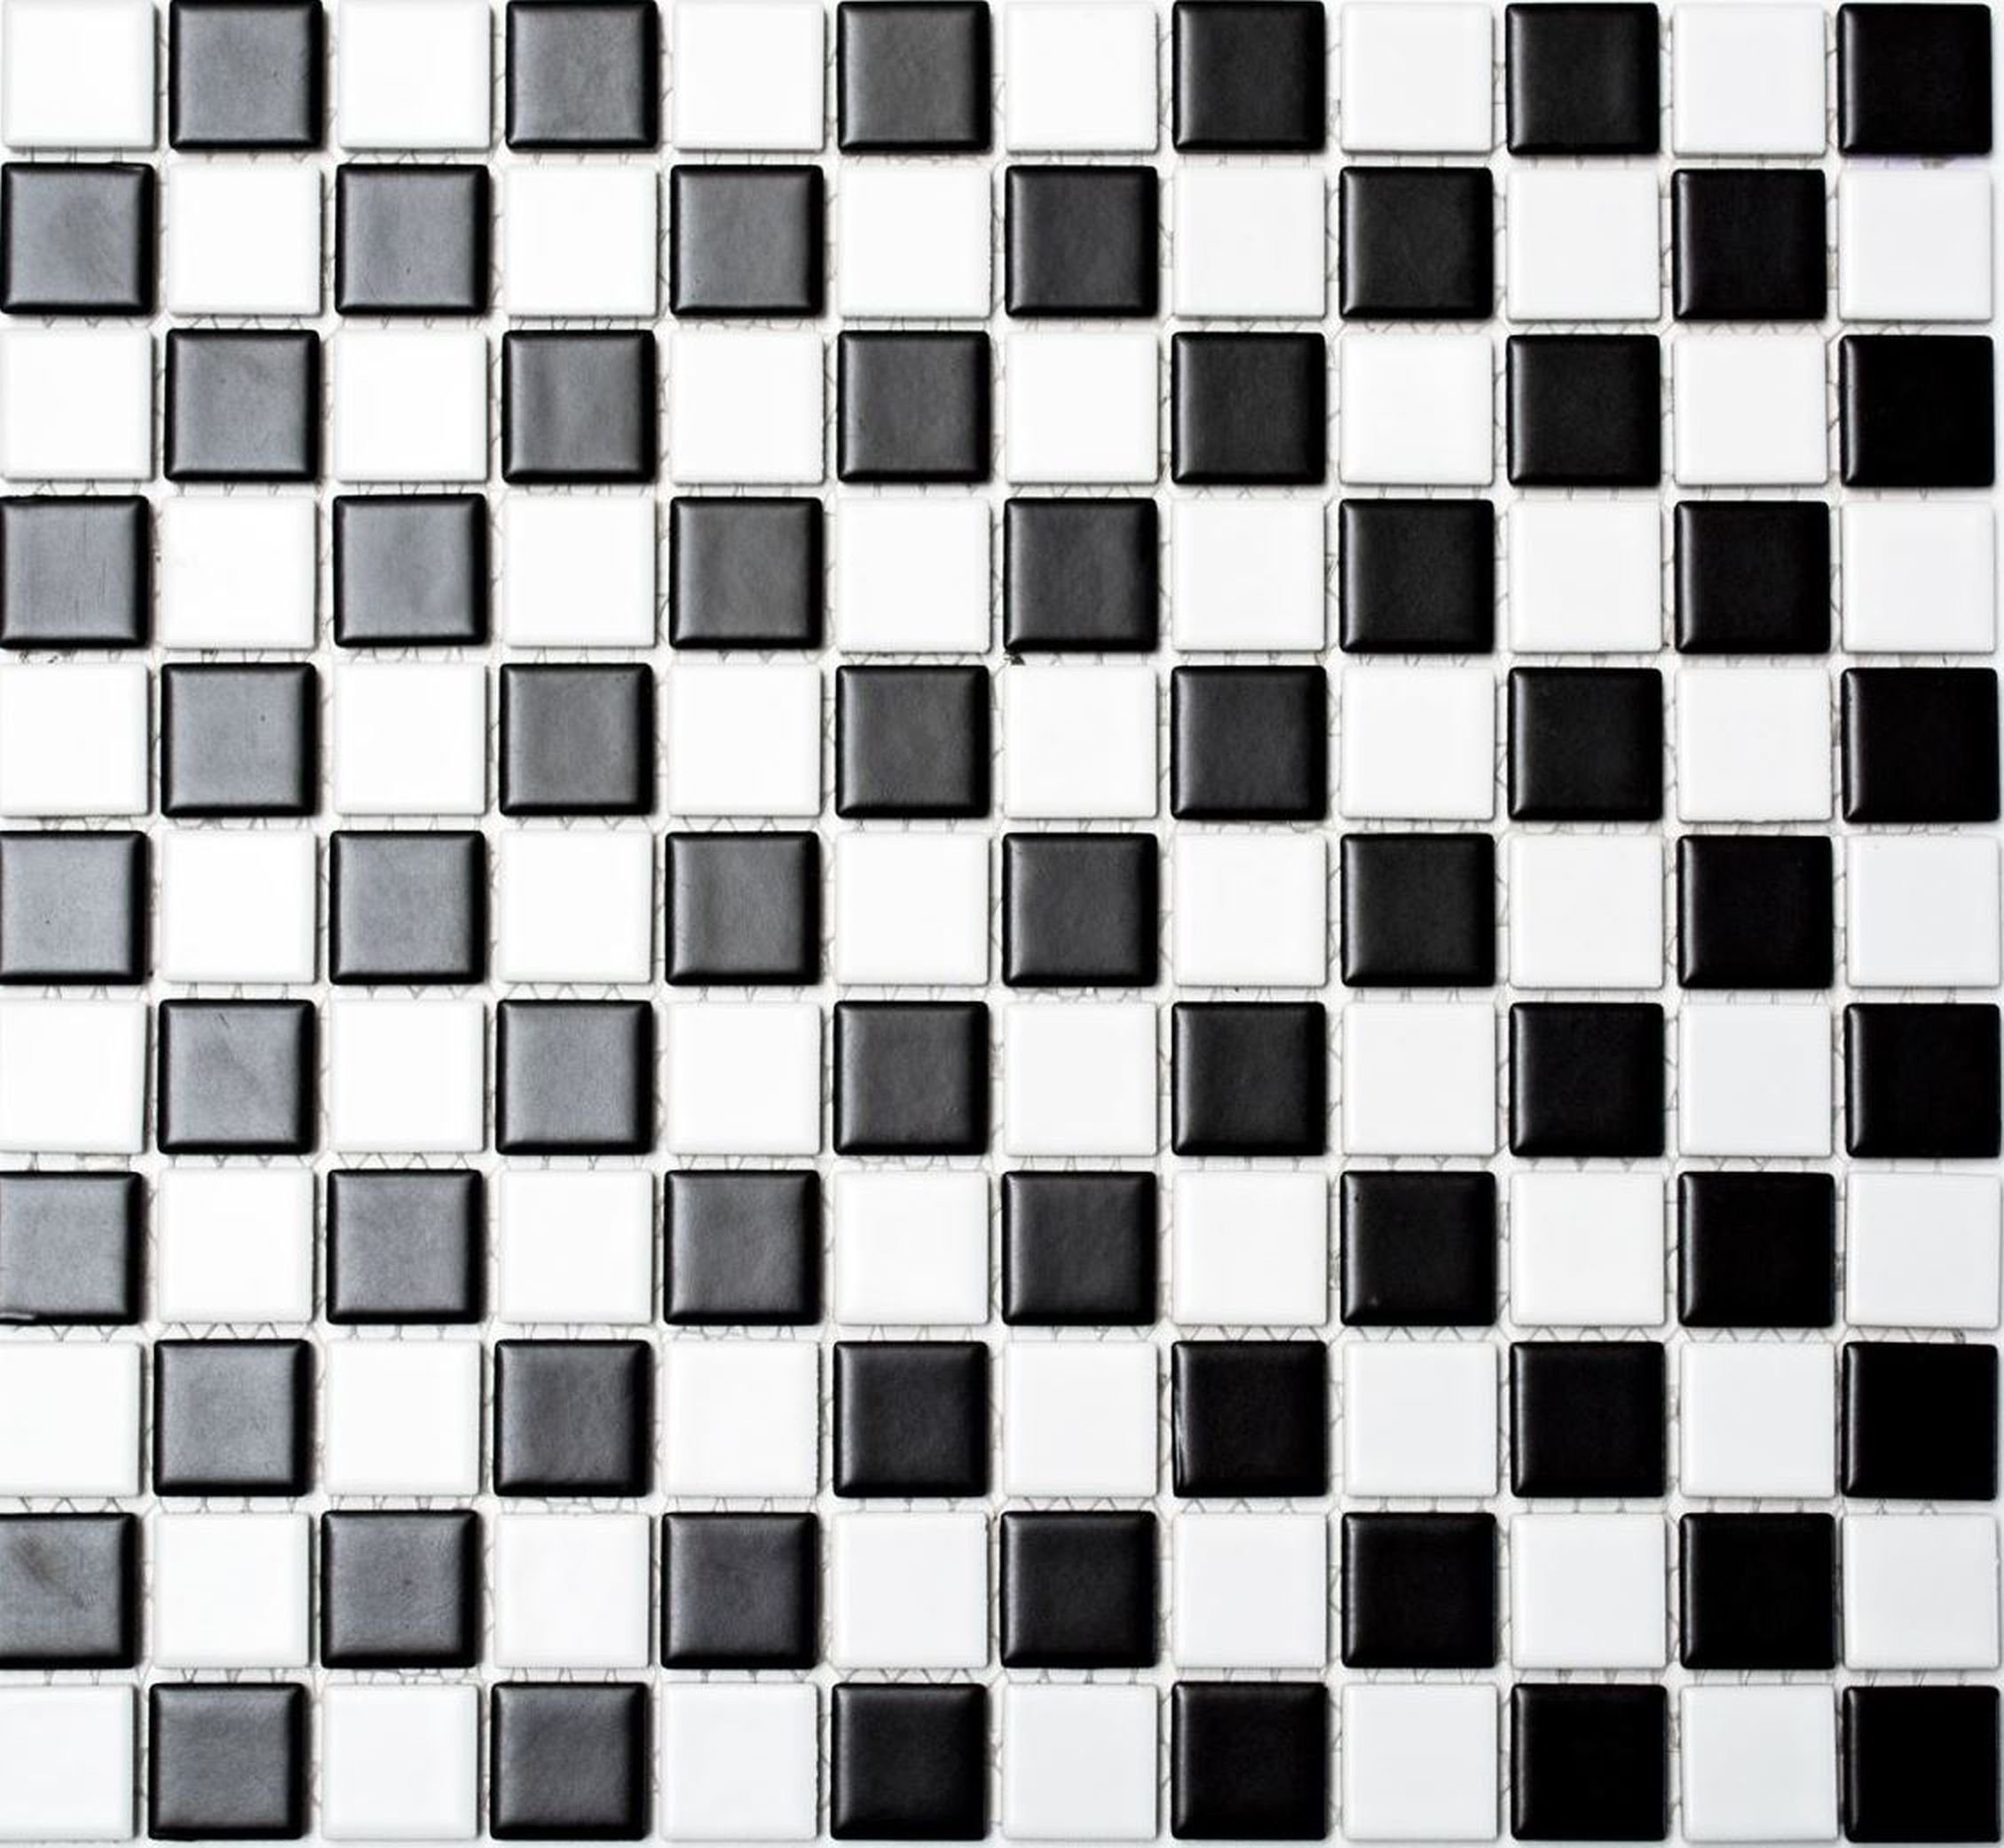 Mosani Mosaikfliesen Keramik Mosaik Schachbrett schwarz weiß matt Mosaikfliese | Fliesen